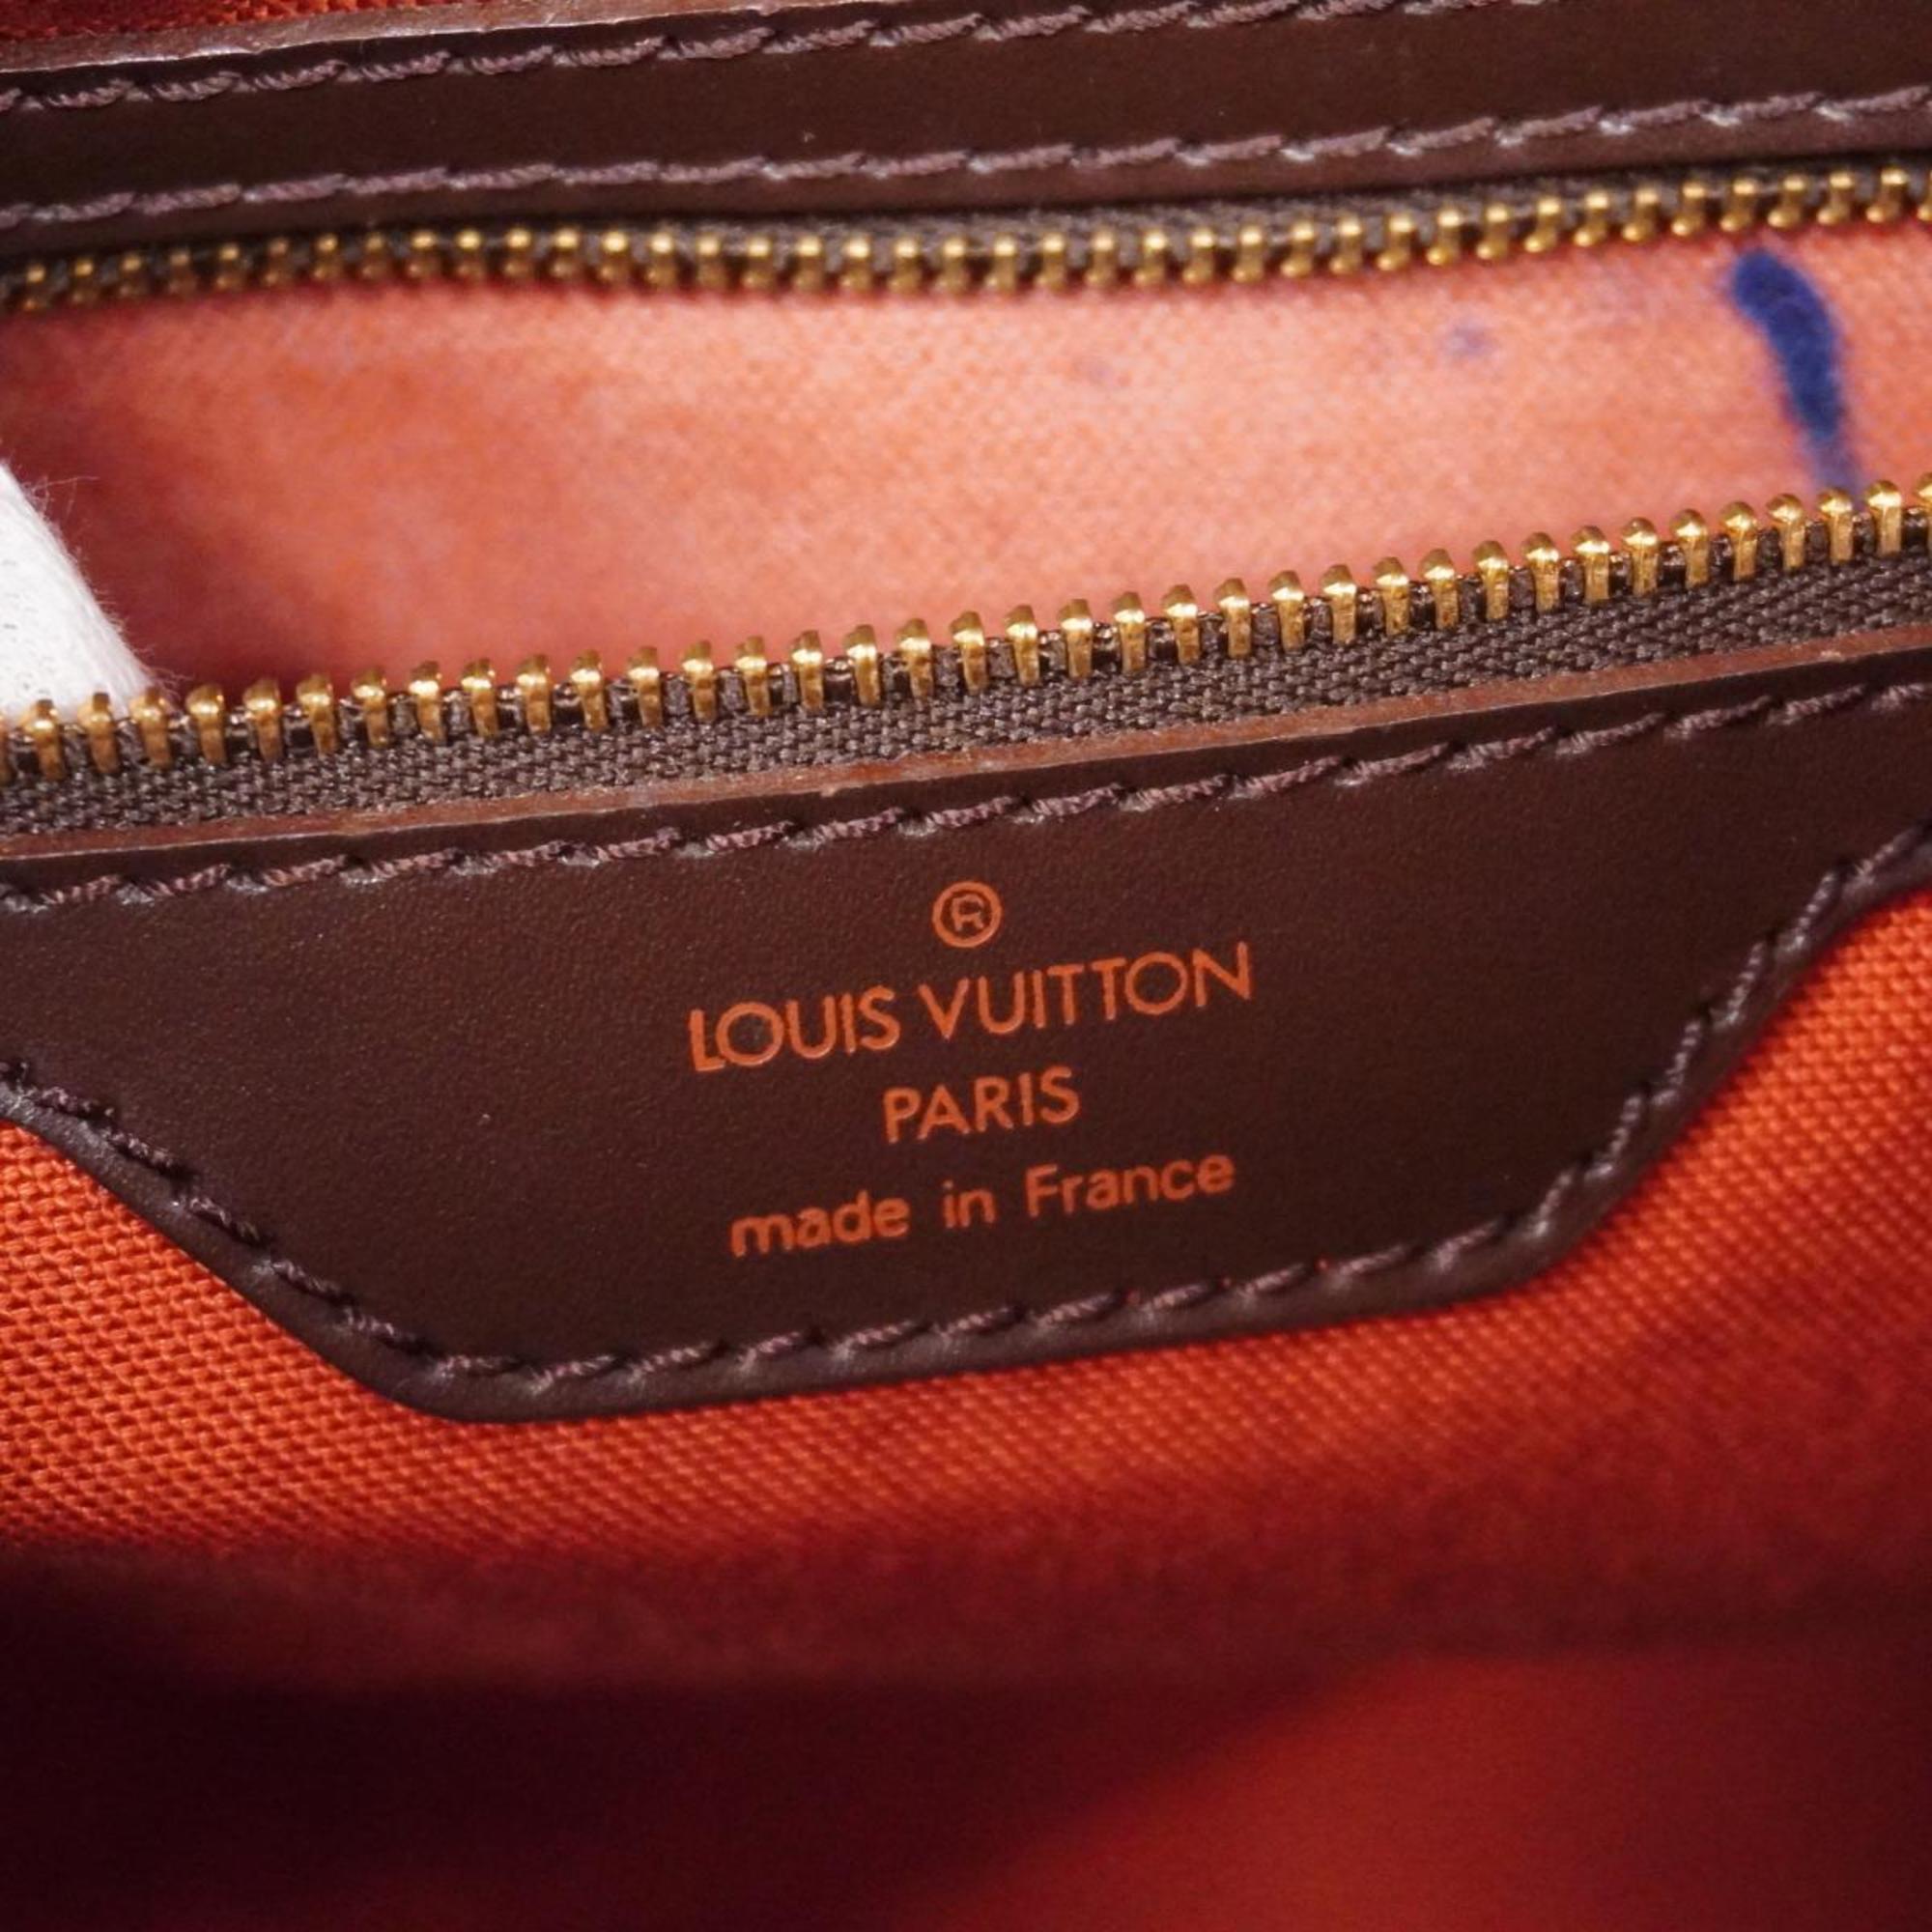 ルイ・ヴィトン(Louis Vuitton) ルイ・ヴィトン ボストンバッグ ダミエ ネオグリニッジ N41163 エベヌメンズ レディース